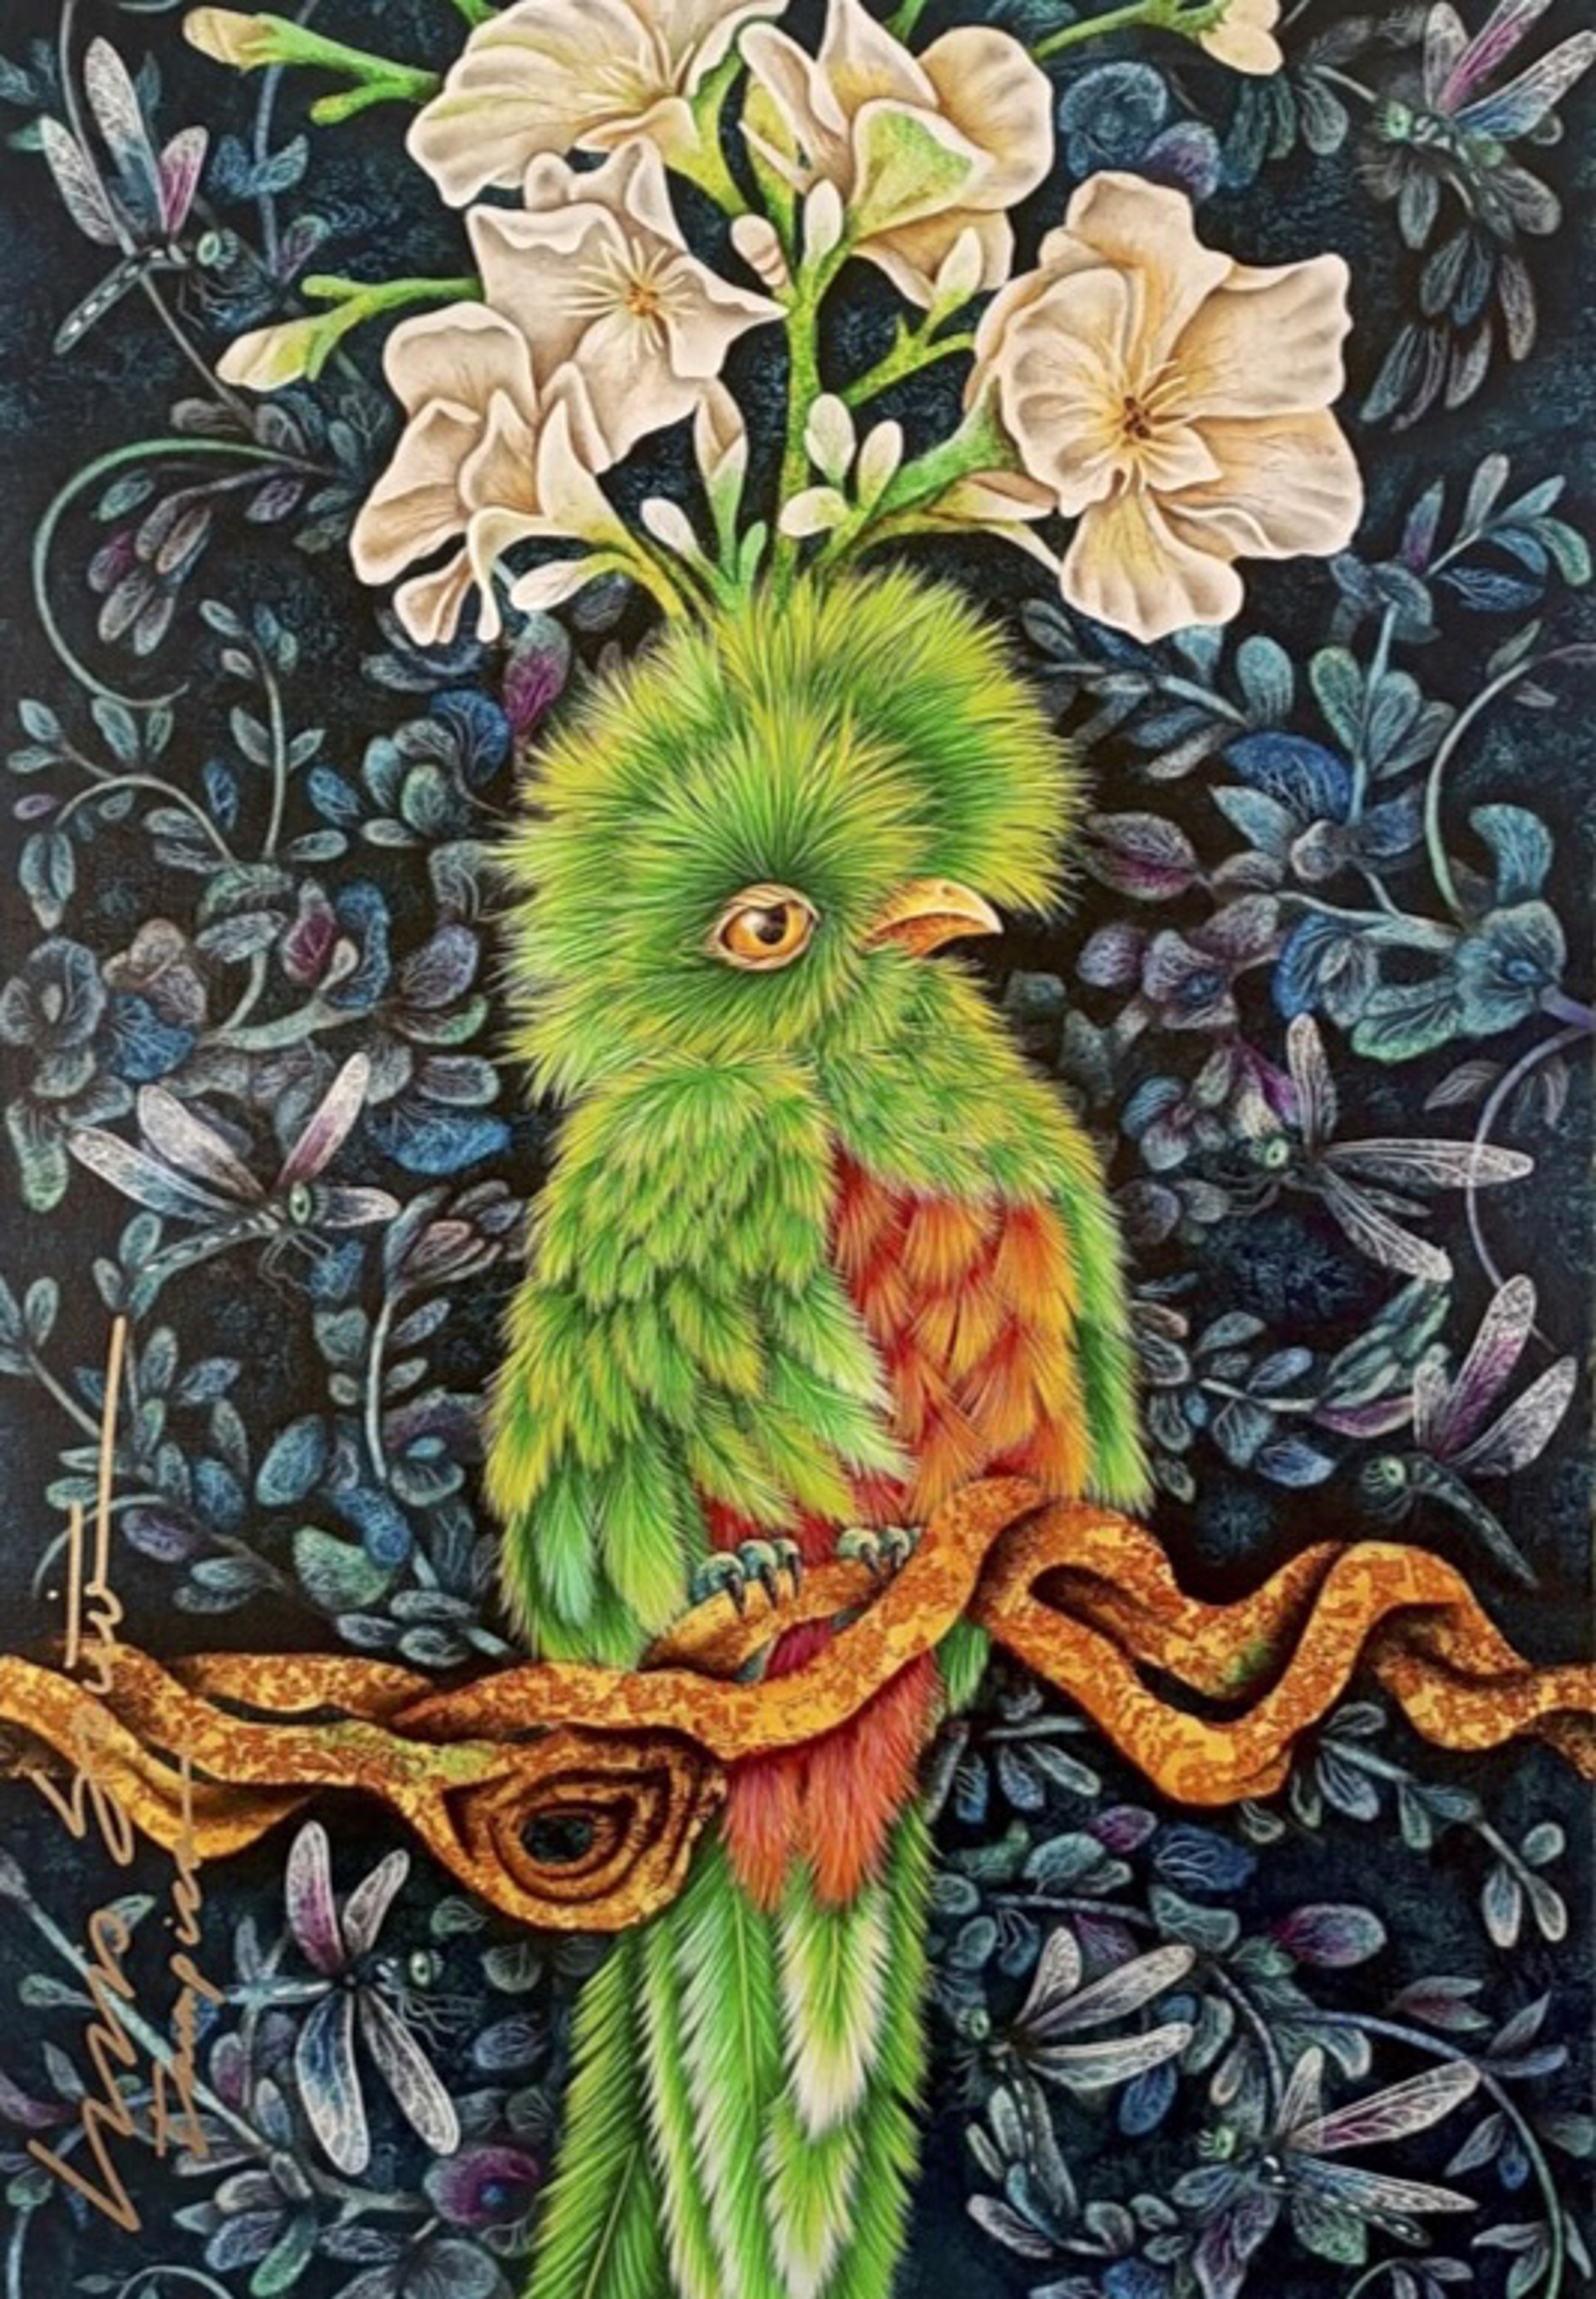 Quetzal by Luis Sottil